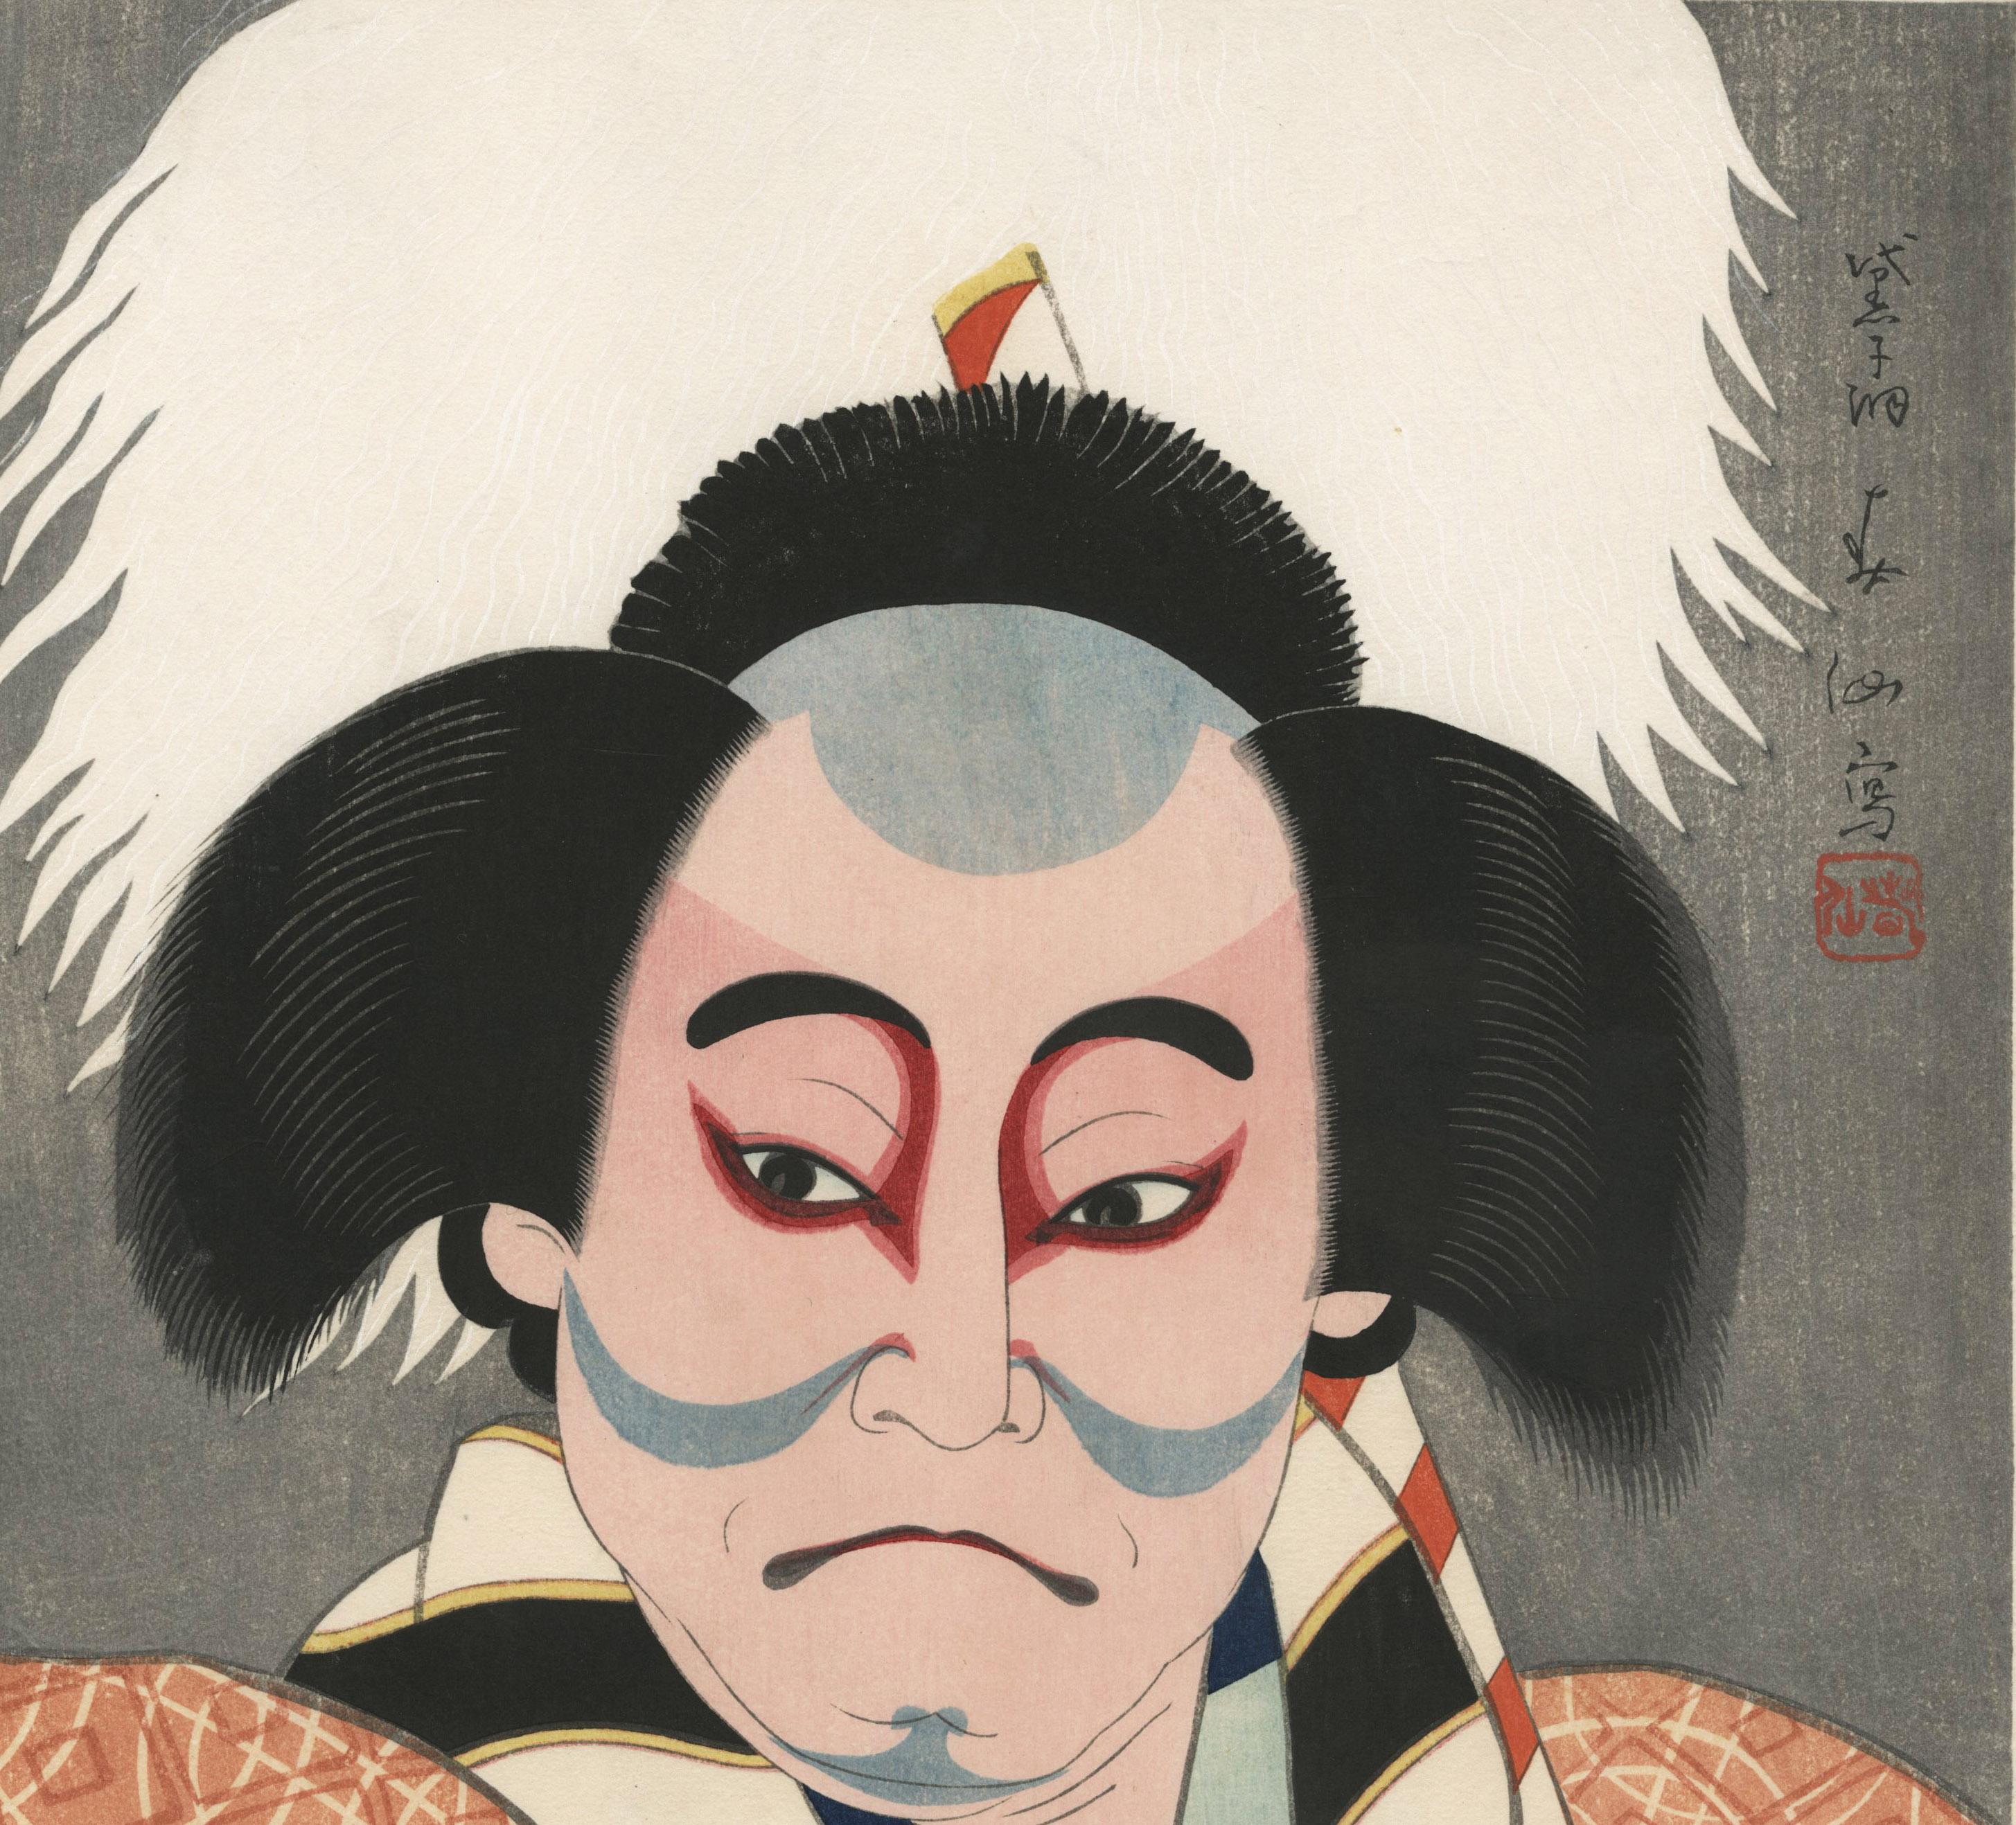 Bando Mitsugoro als Diener mit einem Schwert
Farbholzschnitt, 1952
Aus der Serie Shunsen Nigao-E Shu (Shunsen-Porträts), Sechs Farbholzschnitte
Herausgeber: Watanabe
Ausgezeichneter Zustand
Bildgröße:  15 x 10 1/8 Zoll

Er wurde als Natori